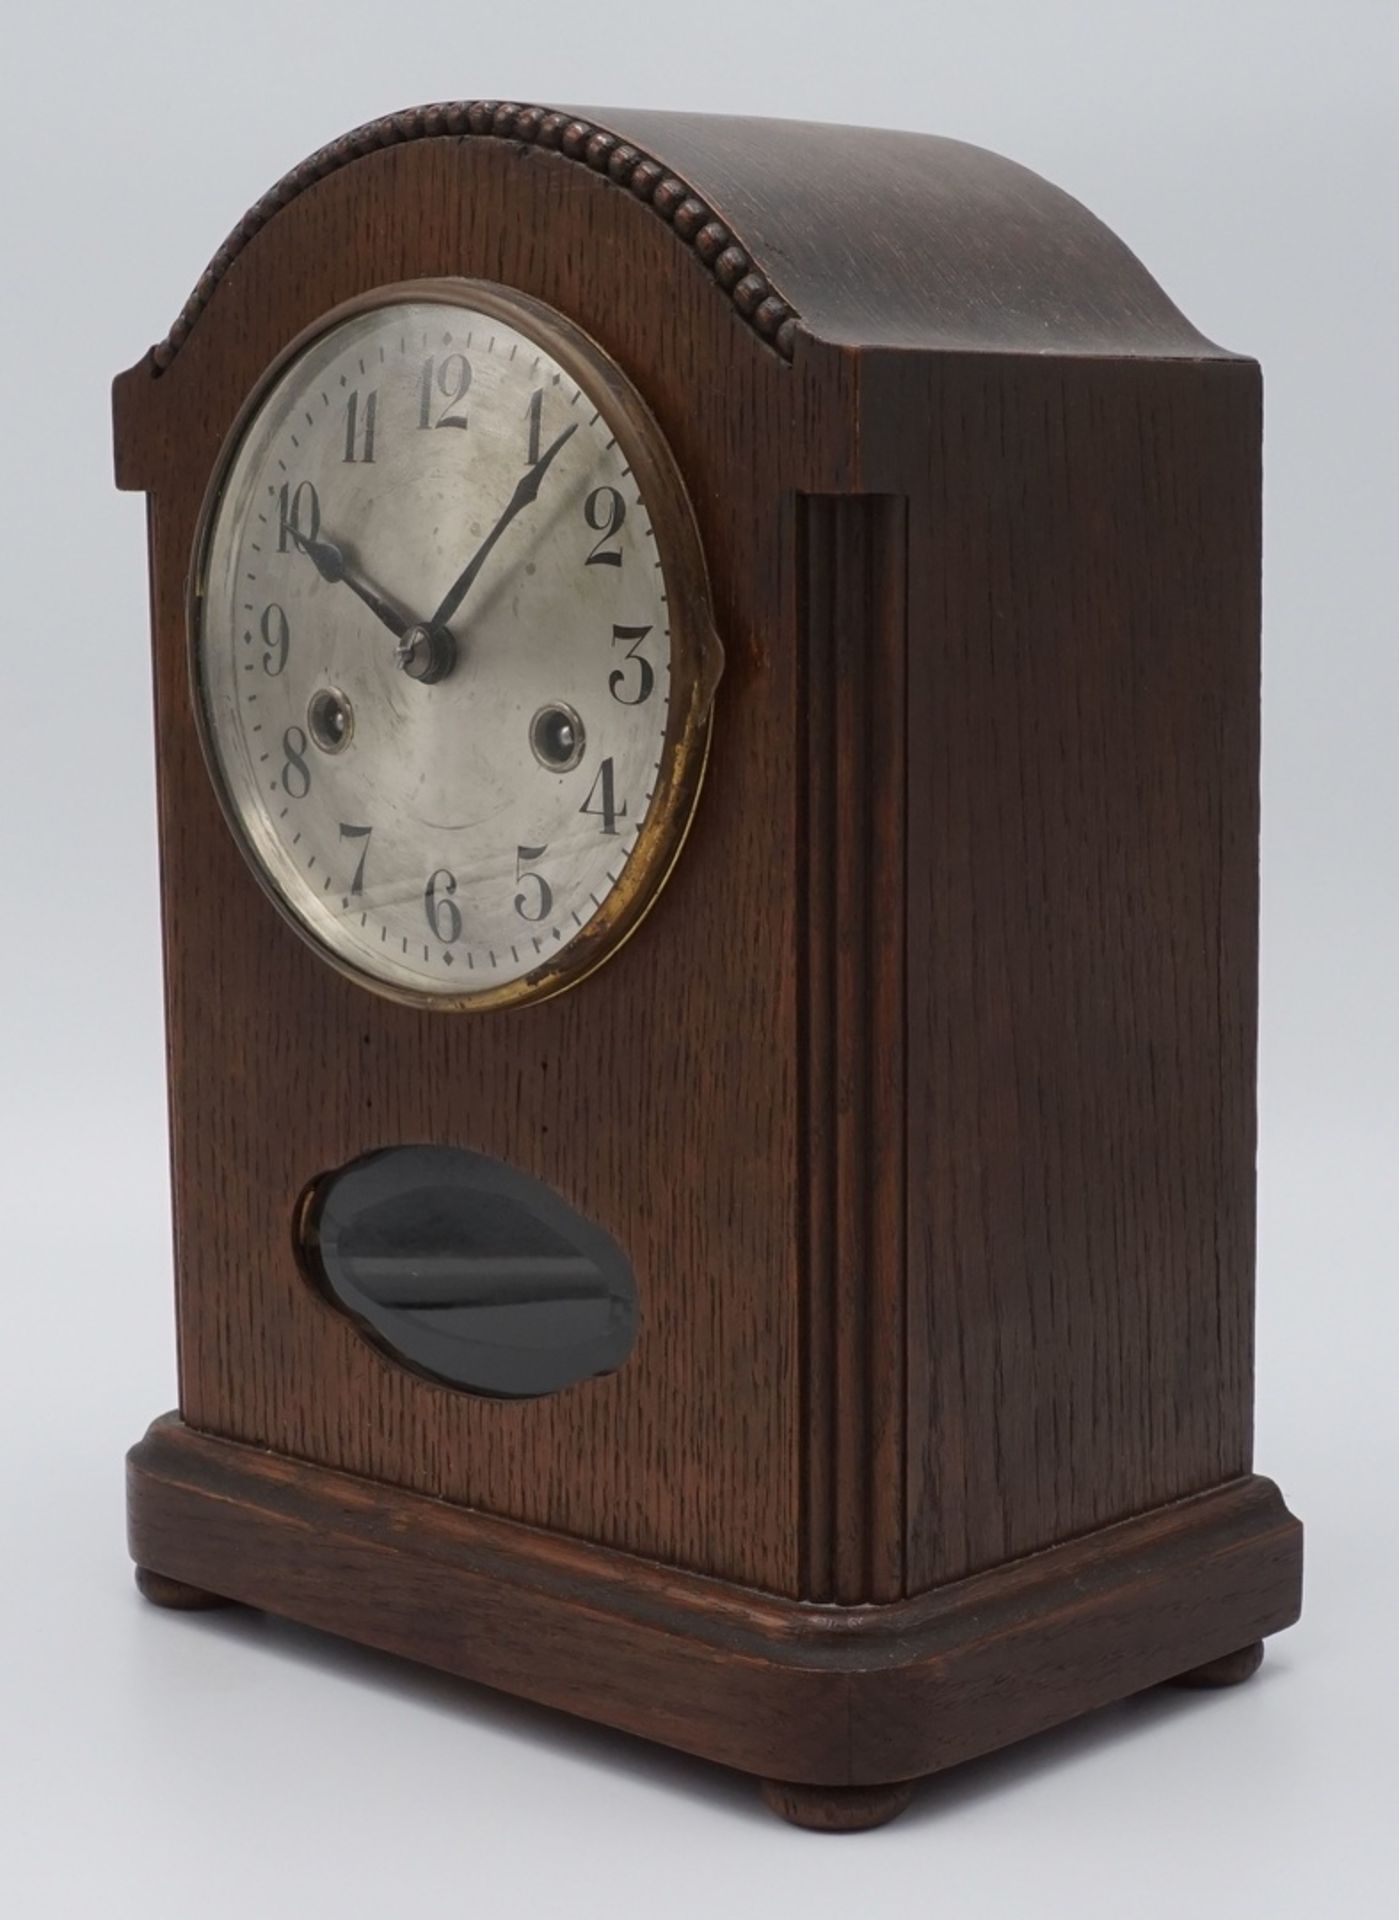 Hamburg-Amerikanische Uhrenfabrik Tischuhr, um 1930Gehäuse aus Eichenholz, Uhrwerk gemarkt mit